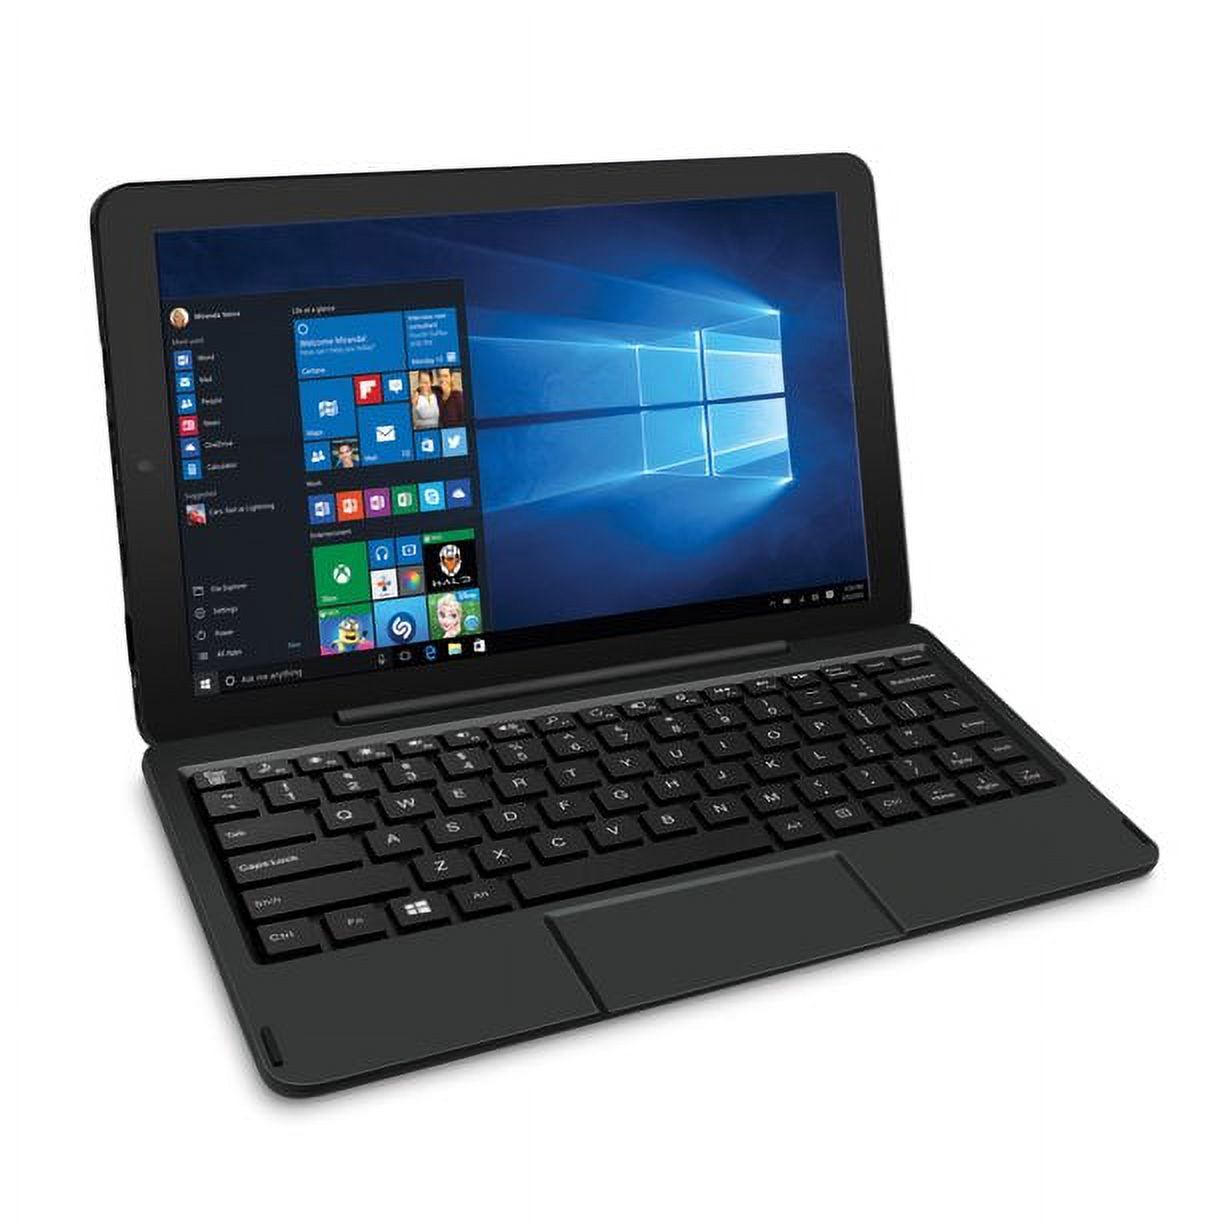 RCA Cambio 10.1" 2-in-1 Tablet 32GB Intel Atom Z3735F Quad-Core Processor Windows 10 - image 3 of 4